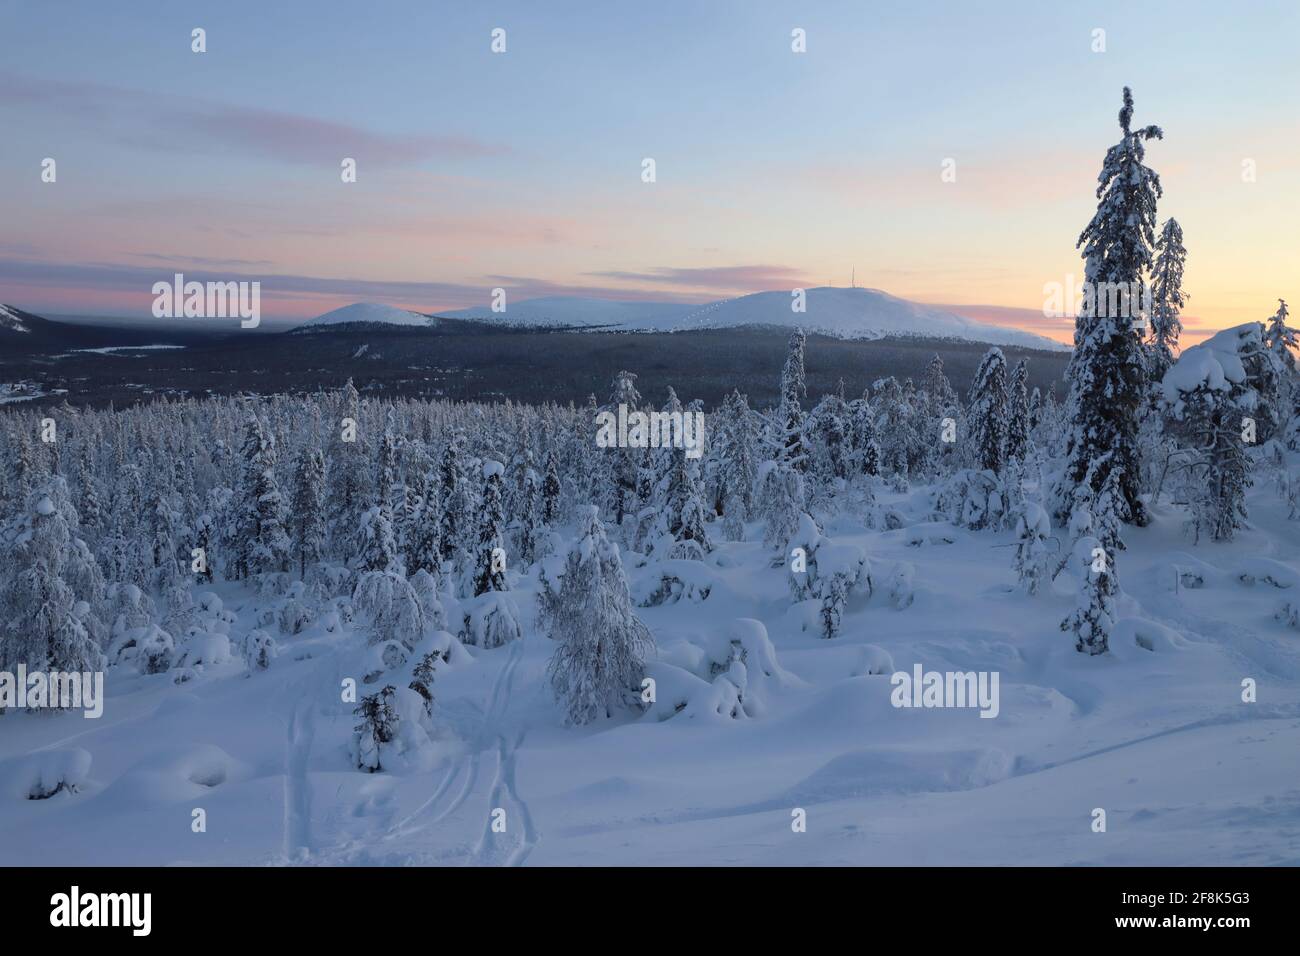 Paysage d'hiver avec des arbres couverts de neige et des monticules en finnois Lappland Banque D'Images